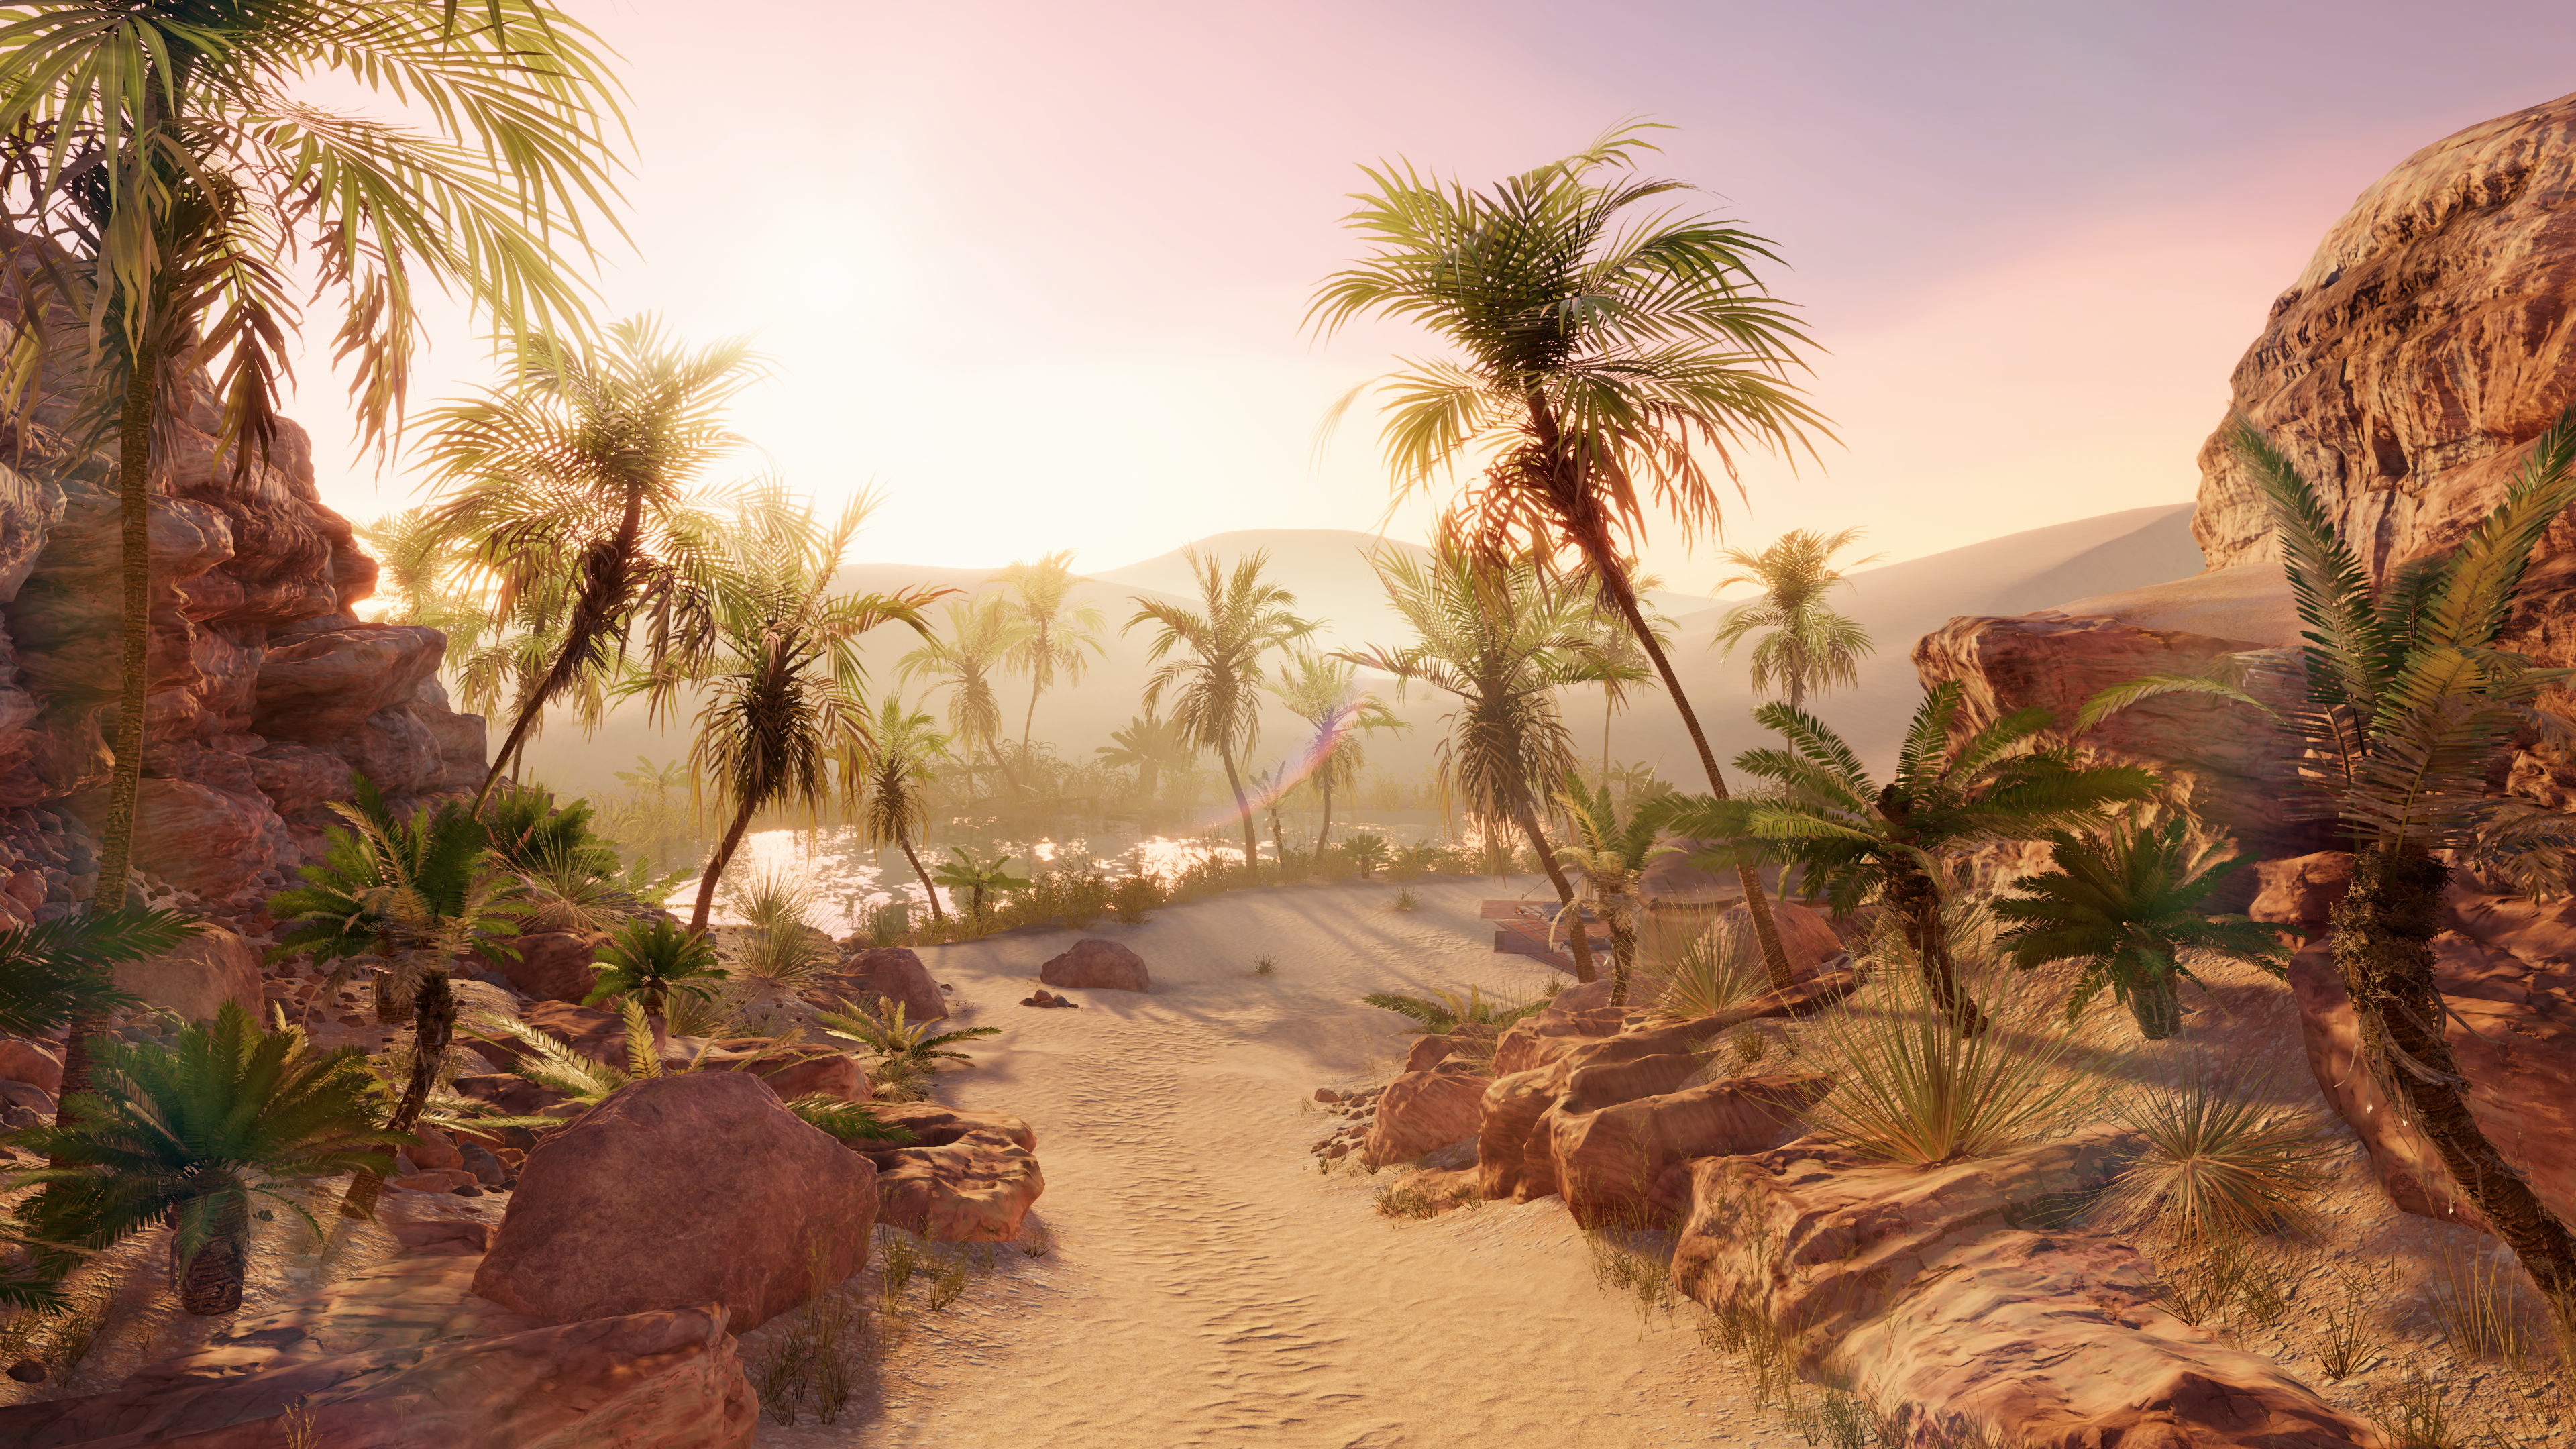 A desert oasis scene from Unity’s URP 3D sample